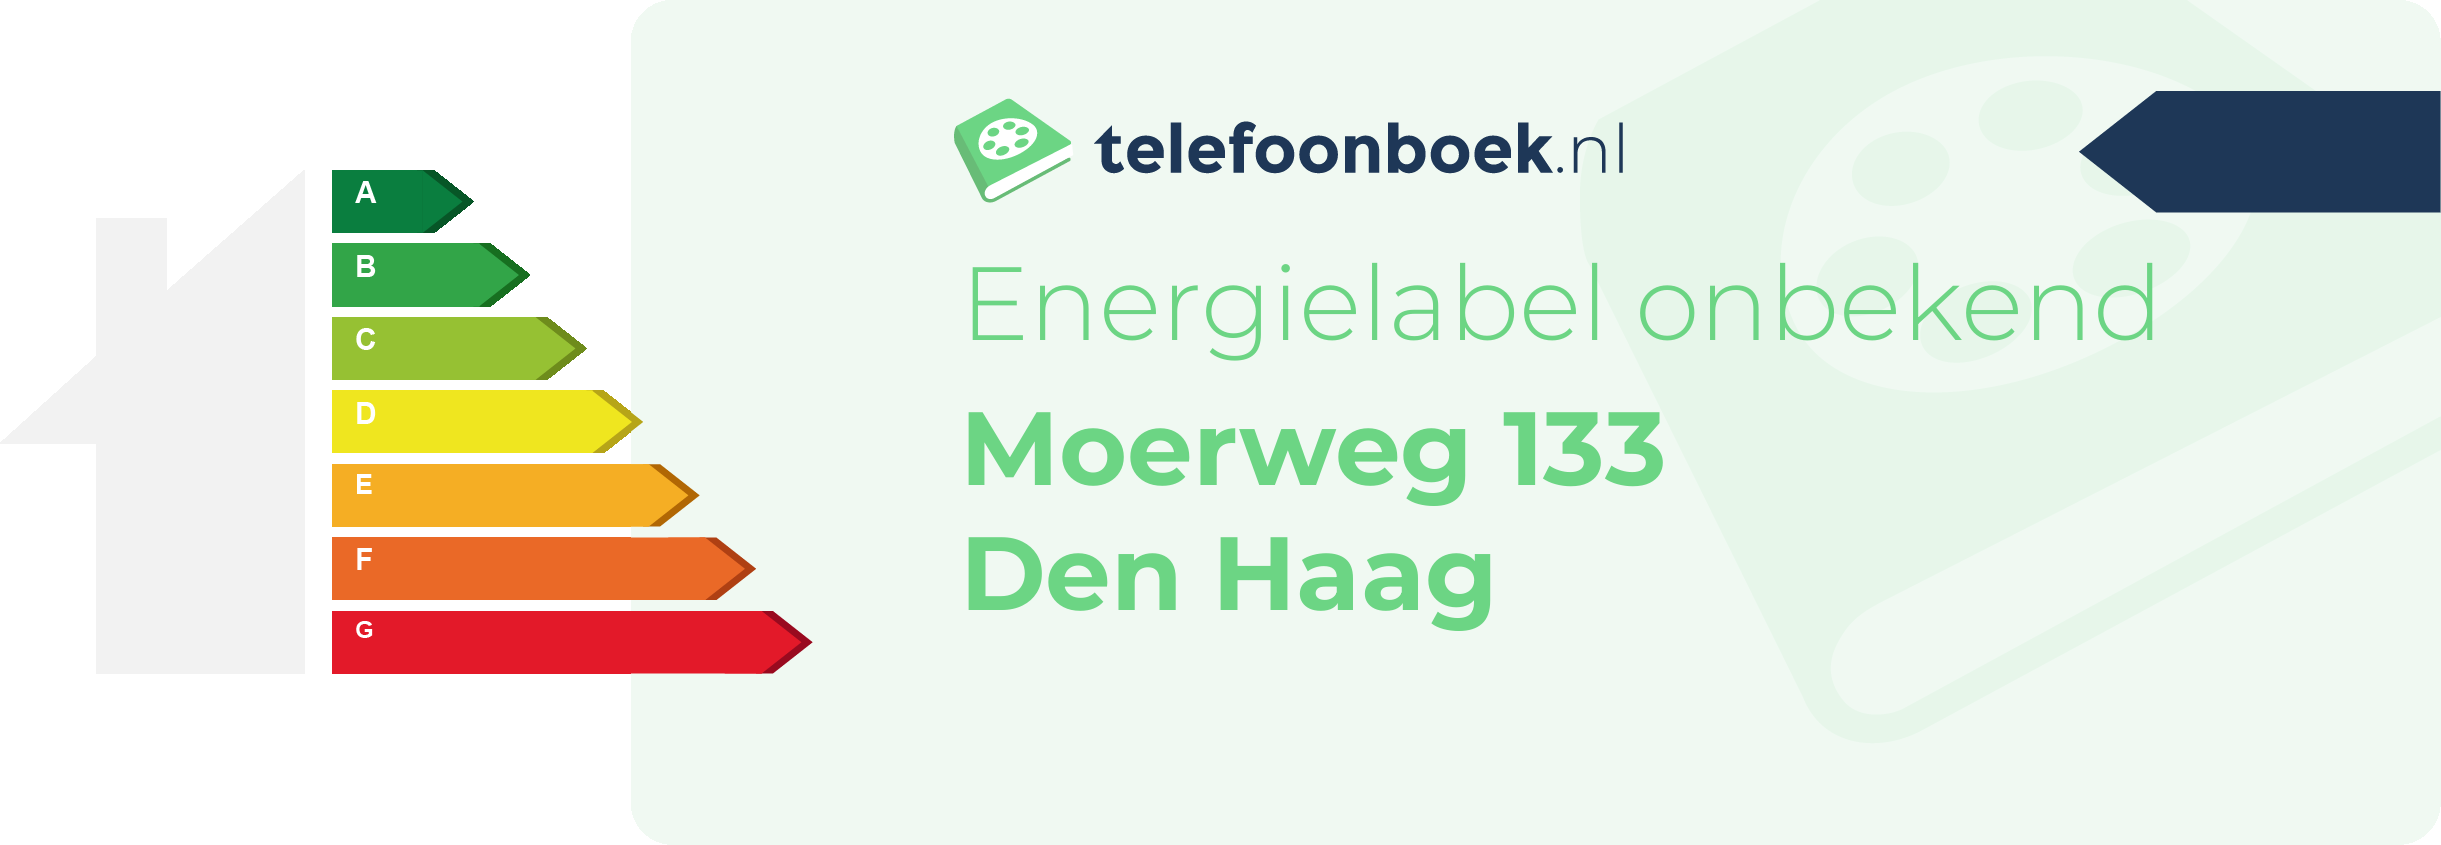 Energielabel Moerweg 133 Den Haag